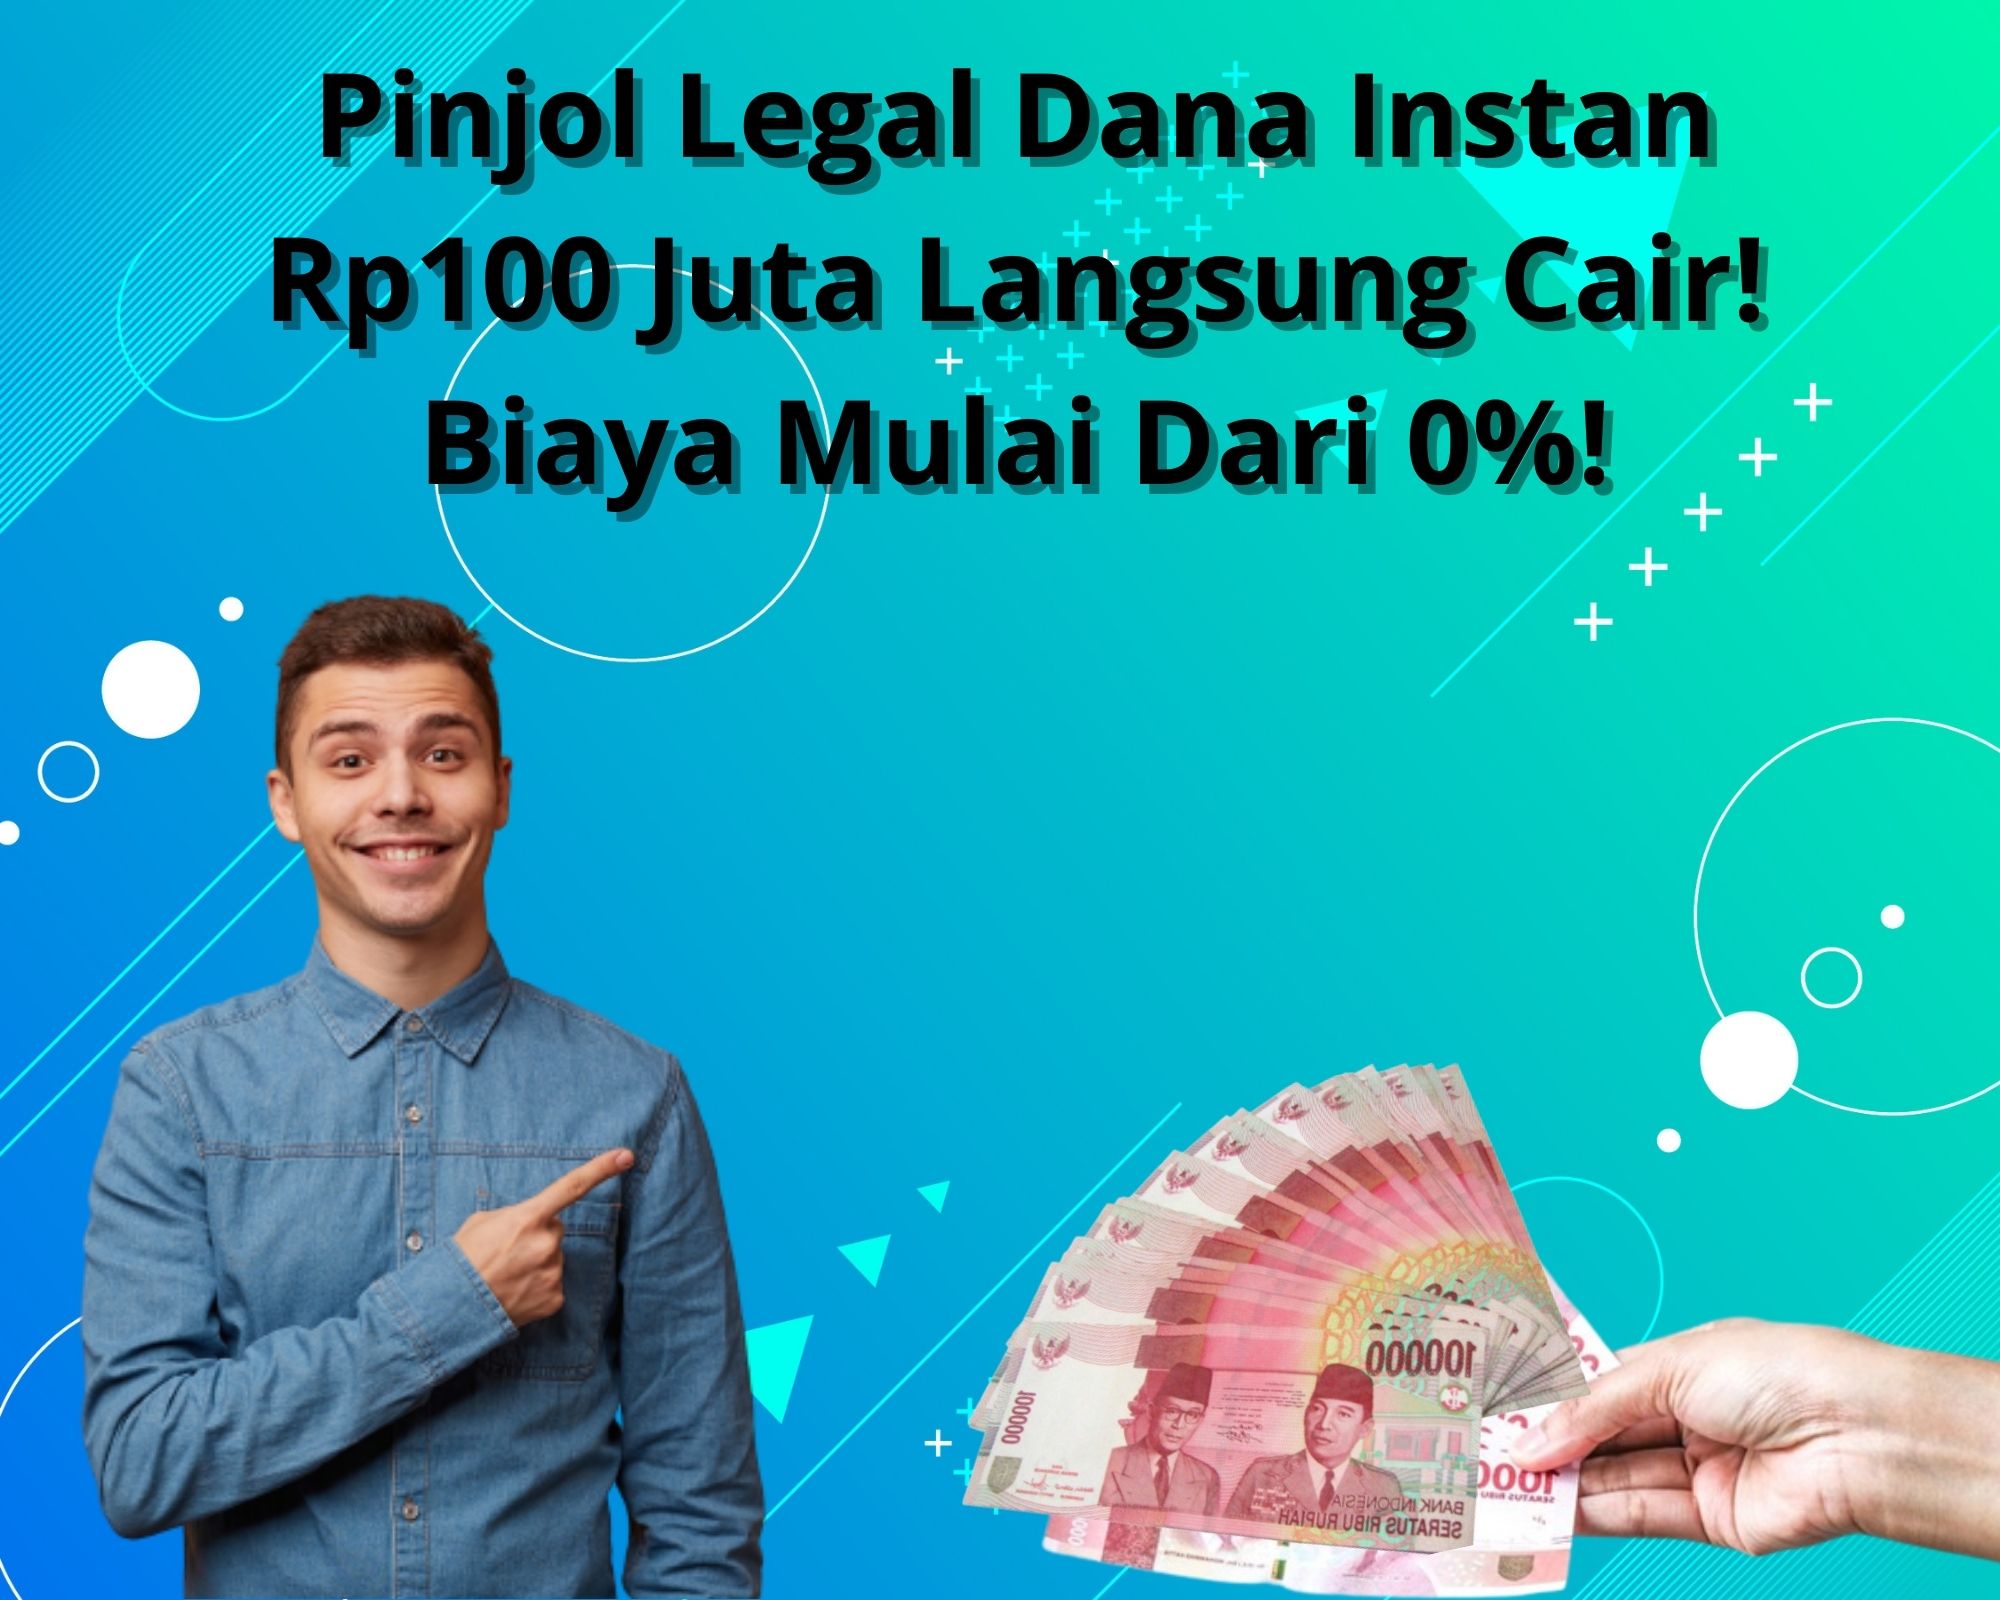 Pinjol Legal Dana Instan Rp100 Juta Langsung Cair Biaya Mulai Dari 0%!